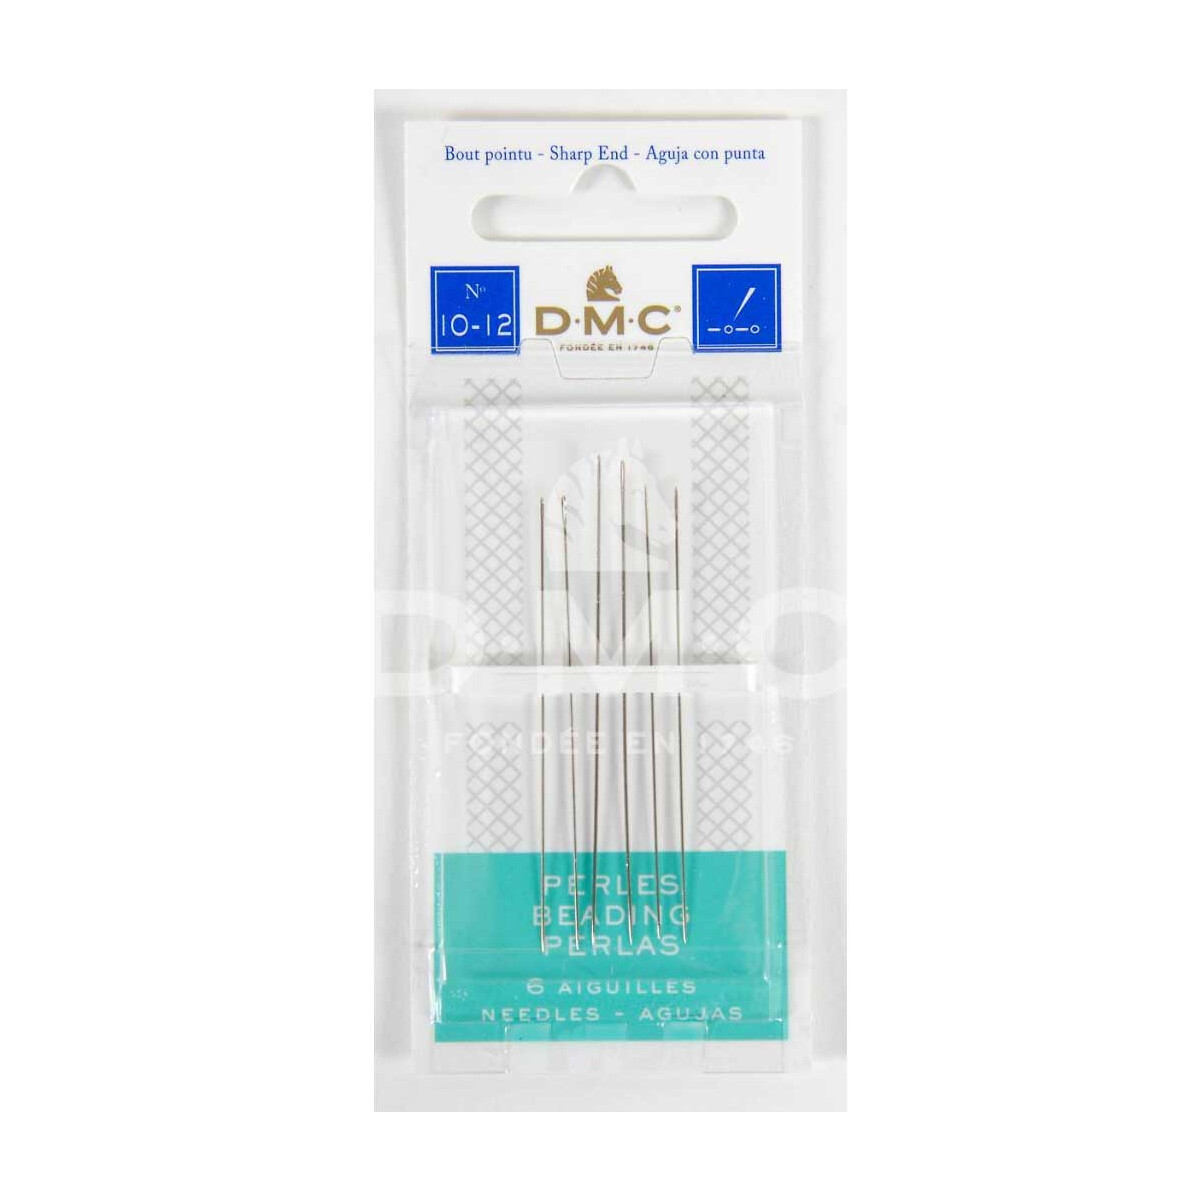 DMC Beding Needle, sharp end, set of 6 needles, sizes: 10-12